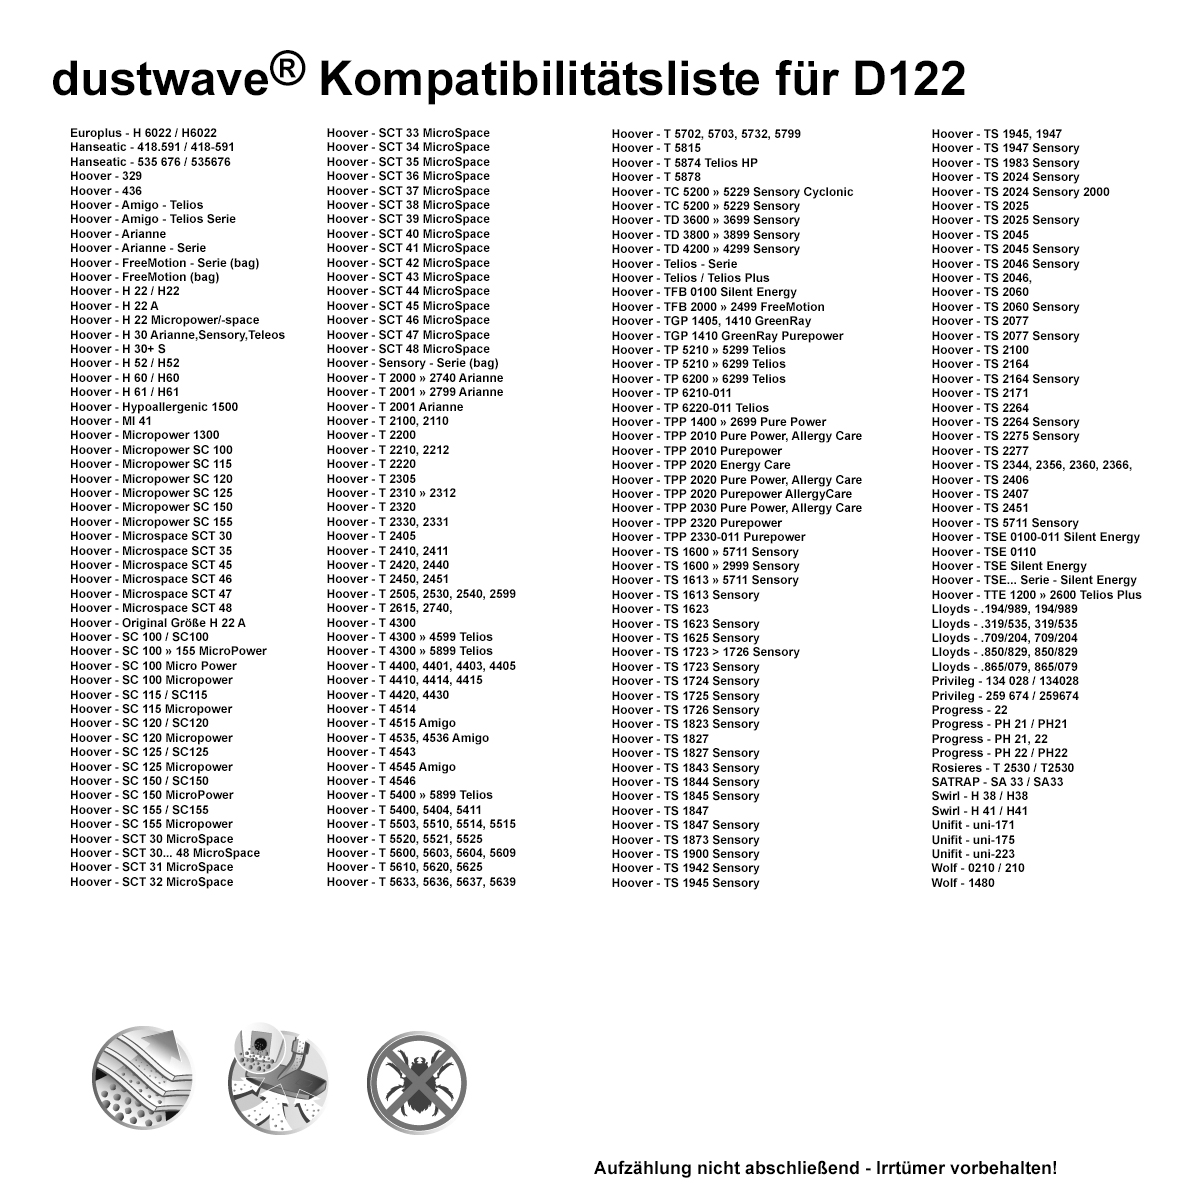 Dustwave® 10 Staubsaugerbeutel für Hoover TS2310 Sensory - hocheffizient, mehrlagiges Mikrovlies mit Hygieneverschluss - Made in Germany